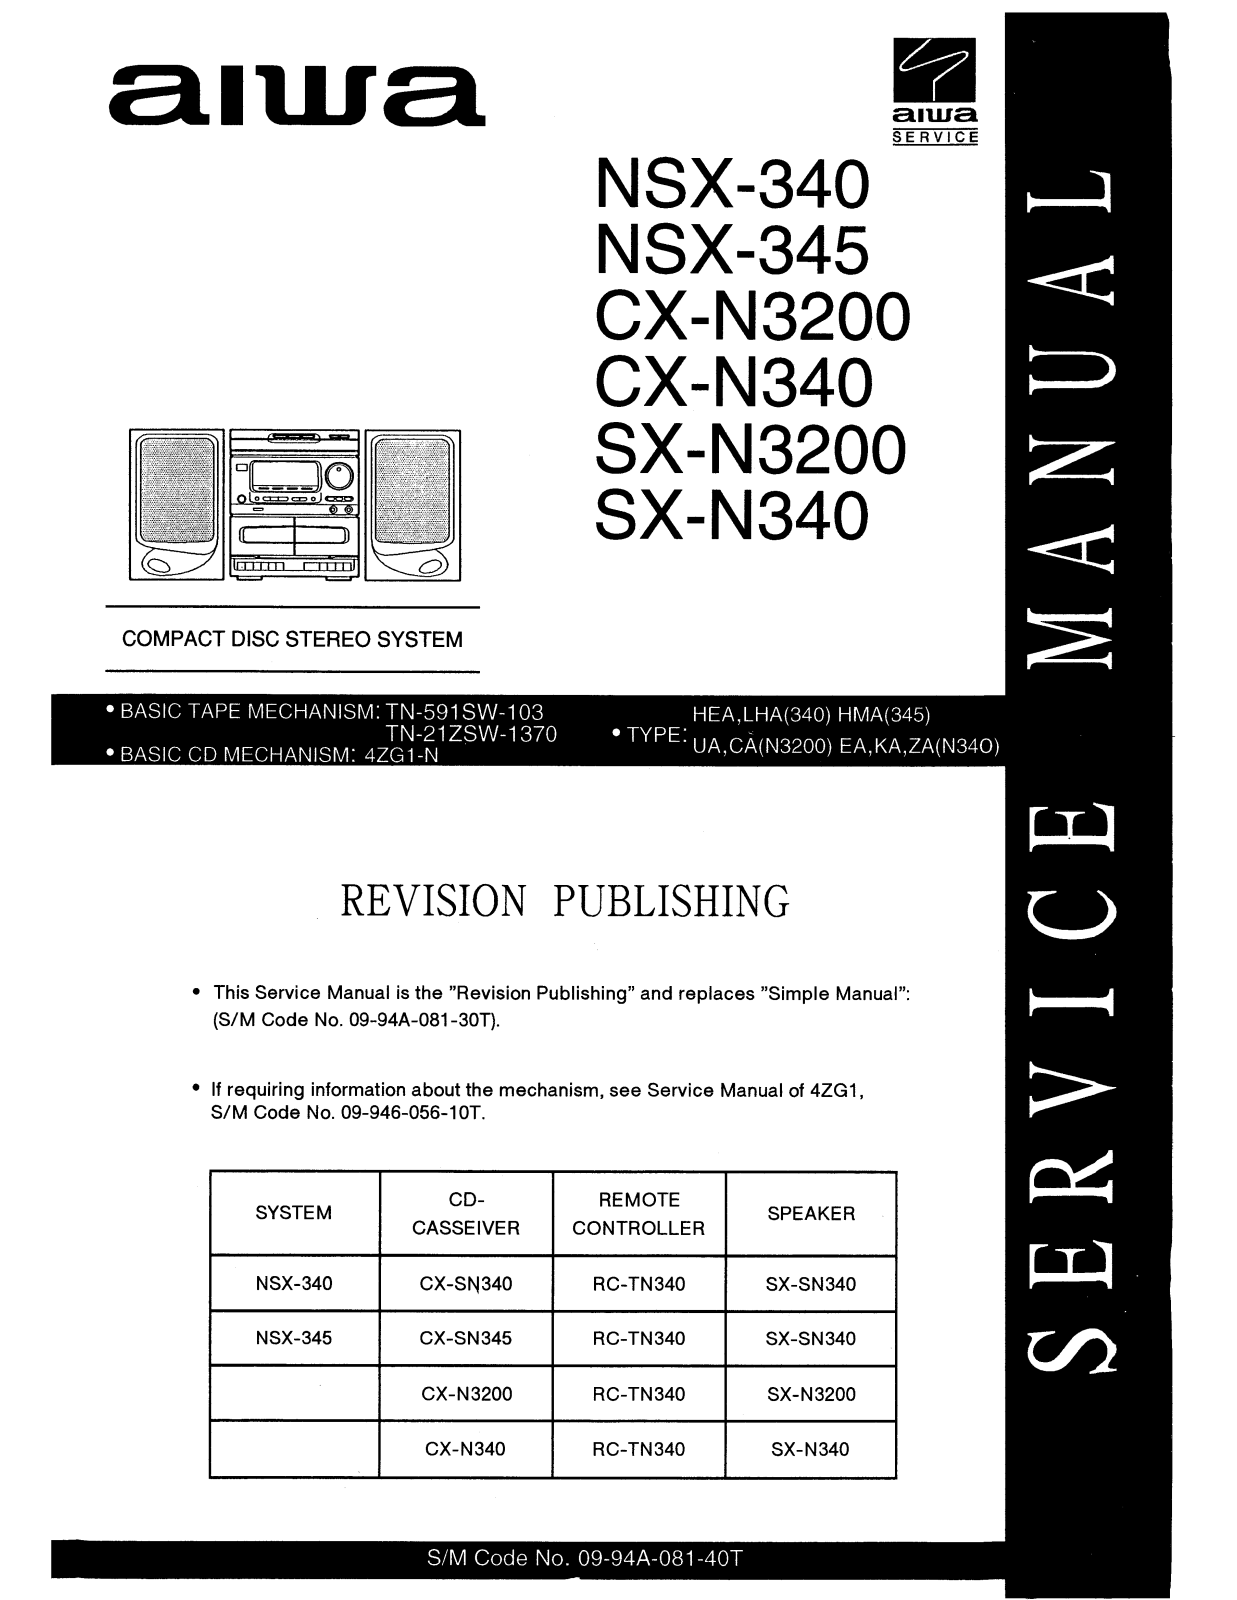 Aiwa NSX-340, NSX-345, CX-N3200, CX-N340, SX-N3200 Service Manual